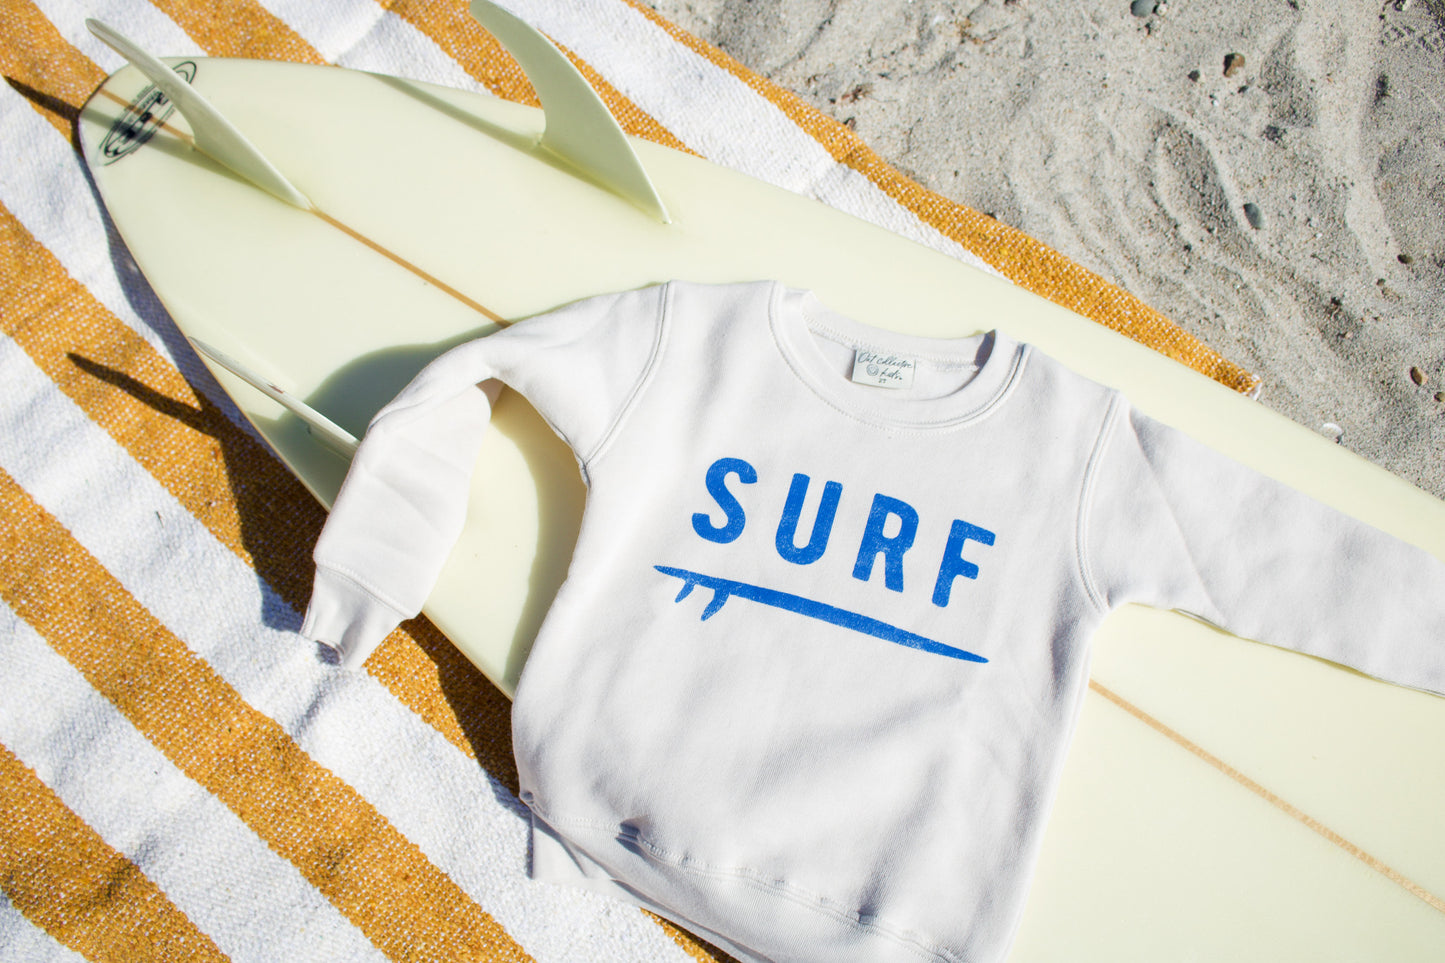 Surf Toddler Unisex Sweatshirt